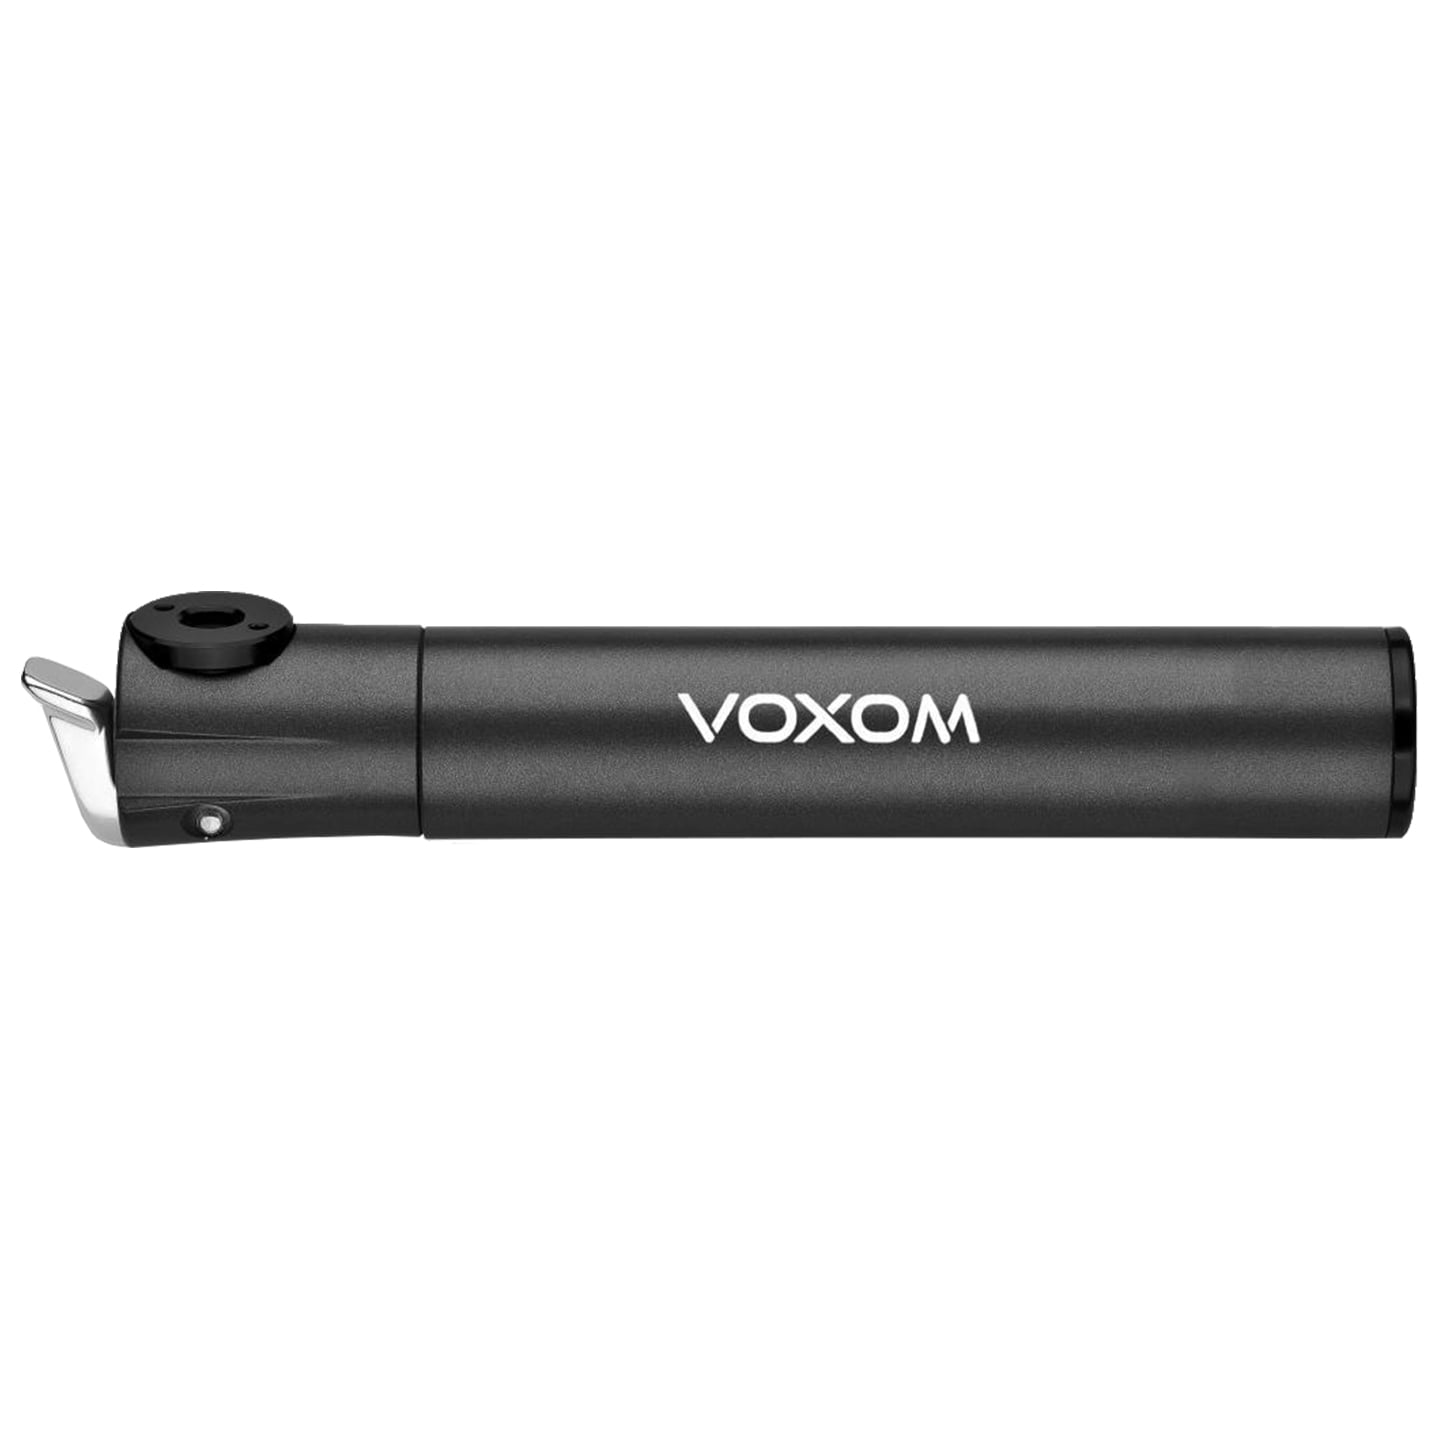 VOXOM Pu5 CNC Mini Pump Mini Pump, Bike pump, Bike accessories